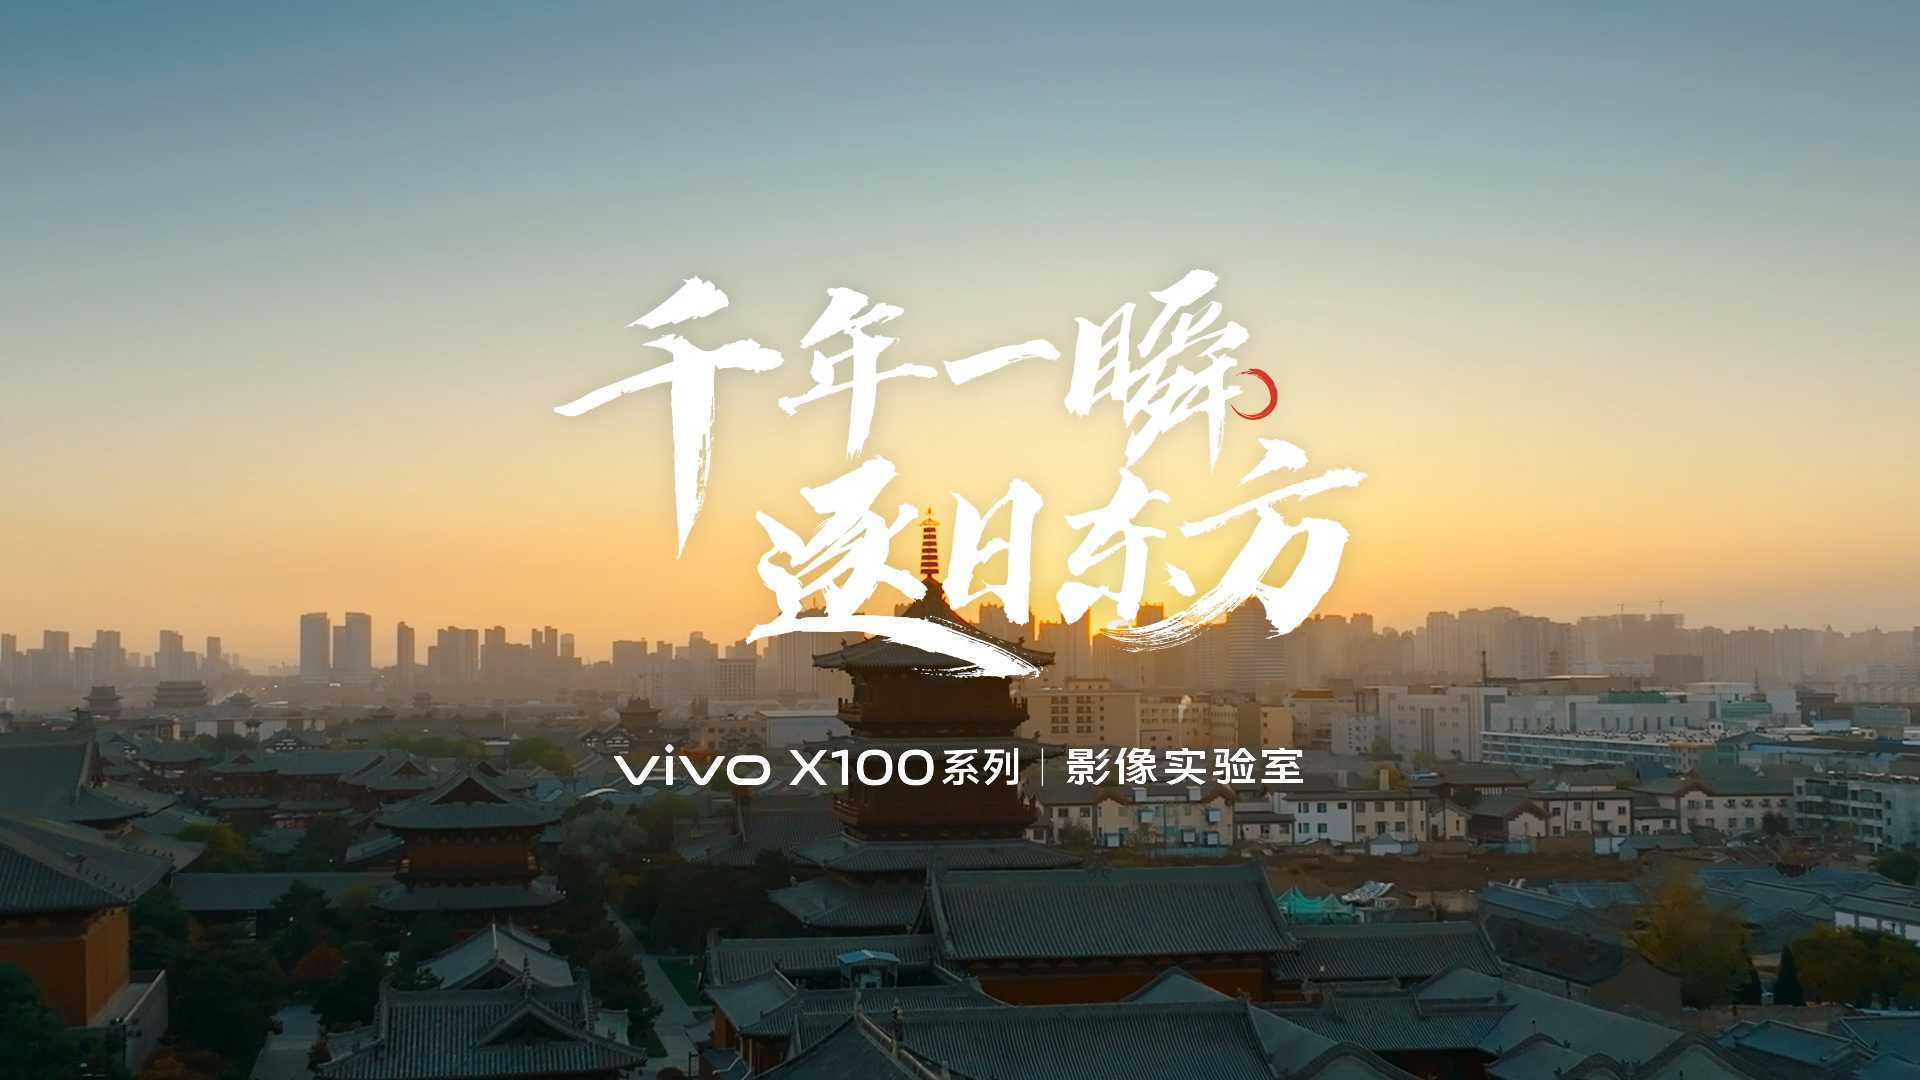 上海葵友 vivo X100系列 影像实验室《千年一瞬 逐日东方》